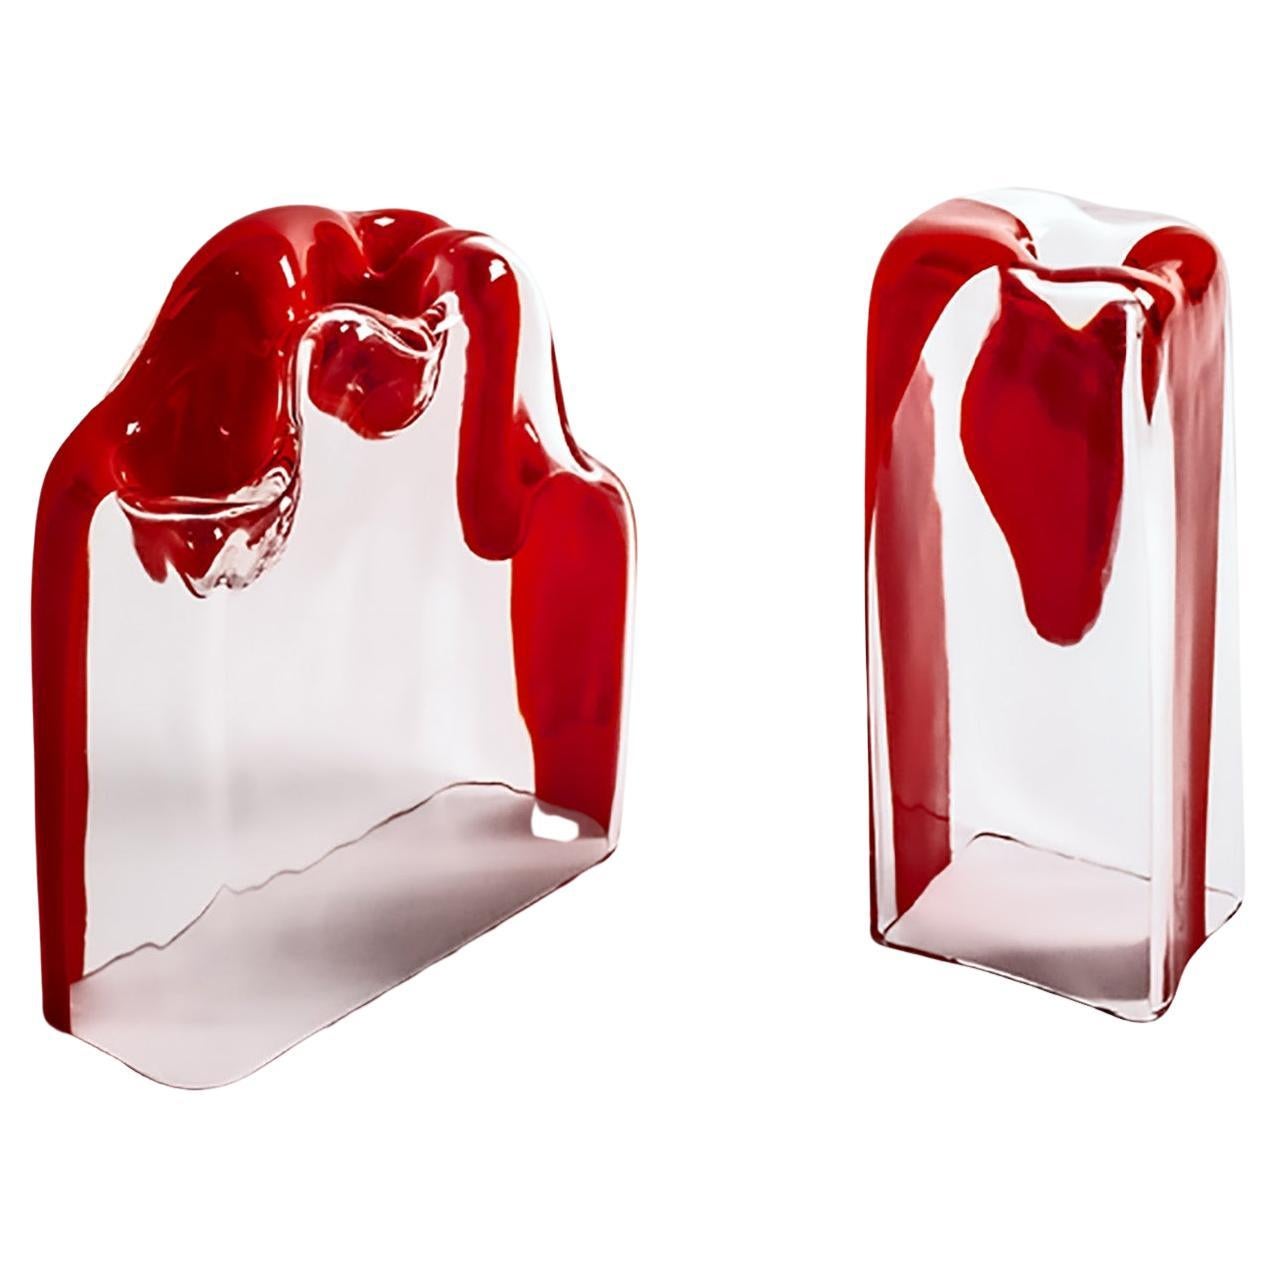 Due vetri/scultura rossi di Murano, Carlo Nason per Mazzega Murano